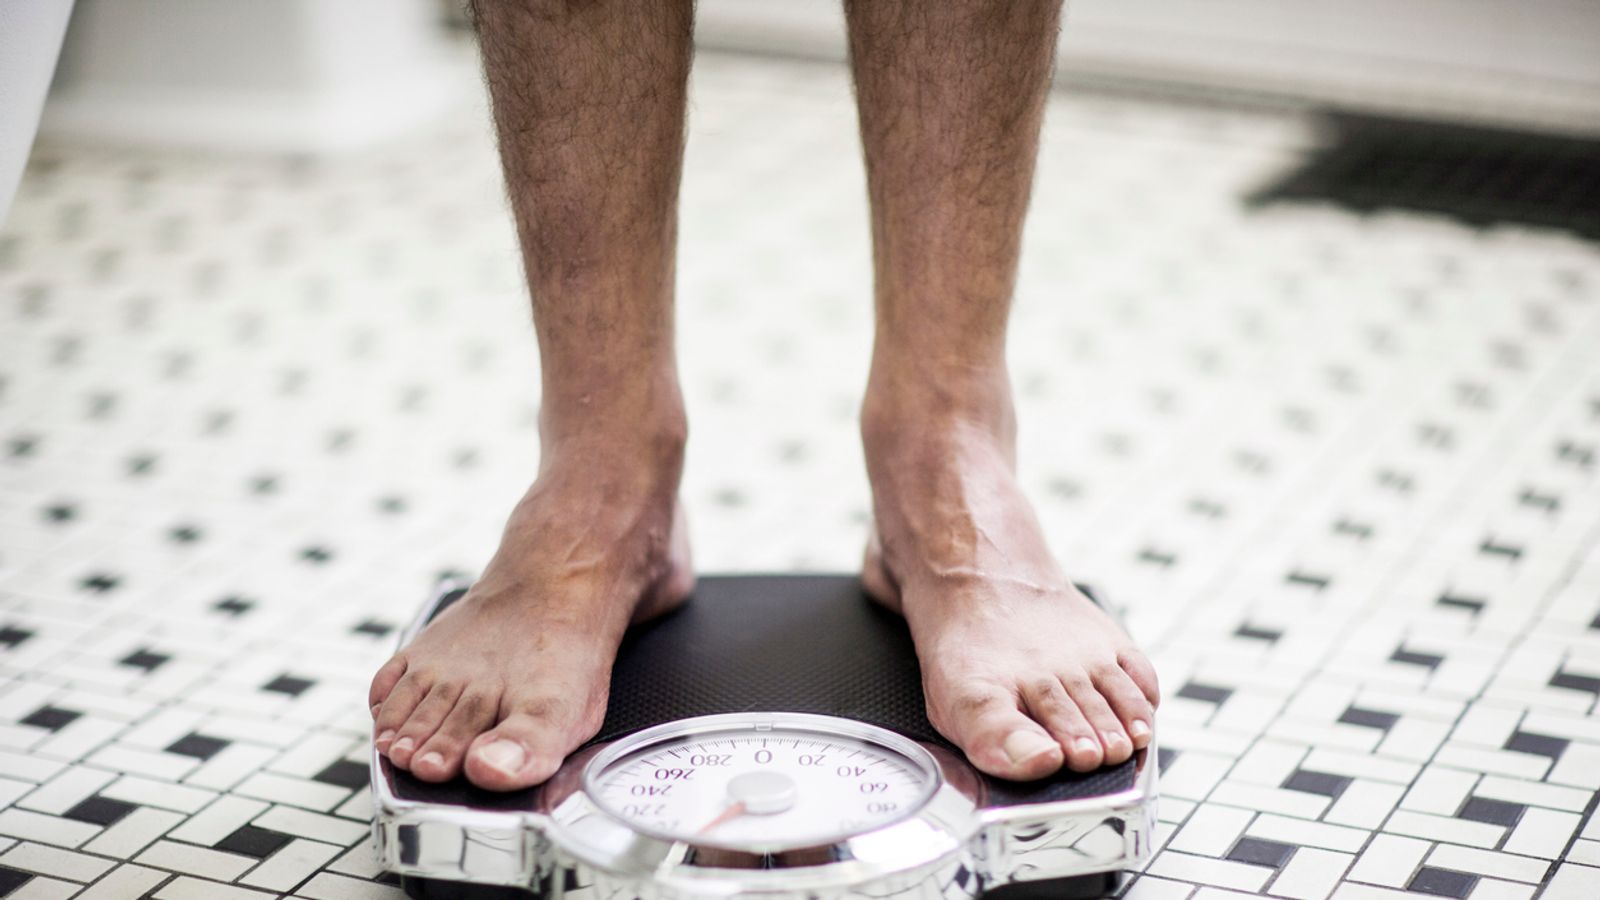 La prochaine vague de coups de perte de poids pourrait arriver – sans les nausées qu’Ozempic et Wegovy peuvent causer |  Nouvelles américaines